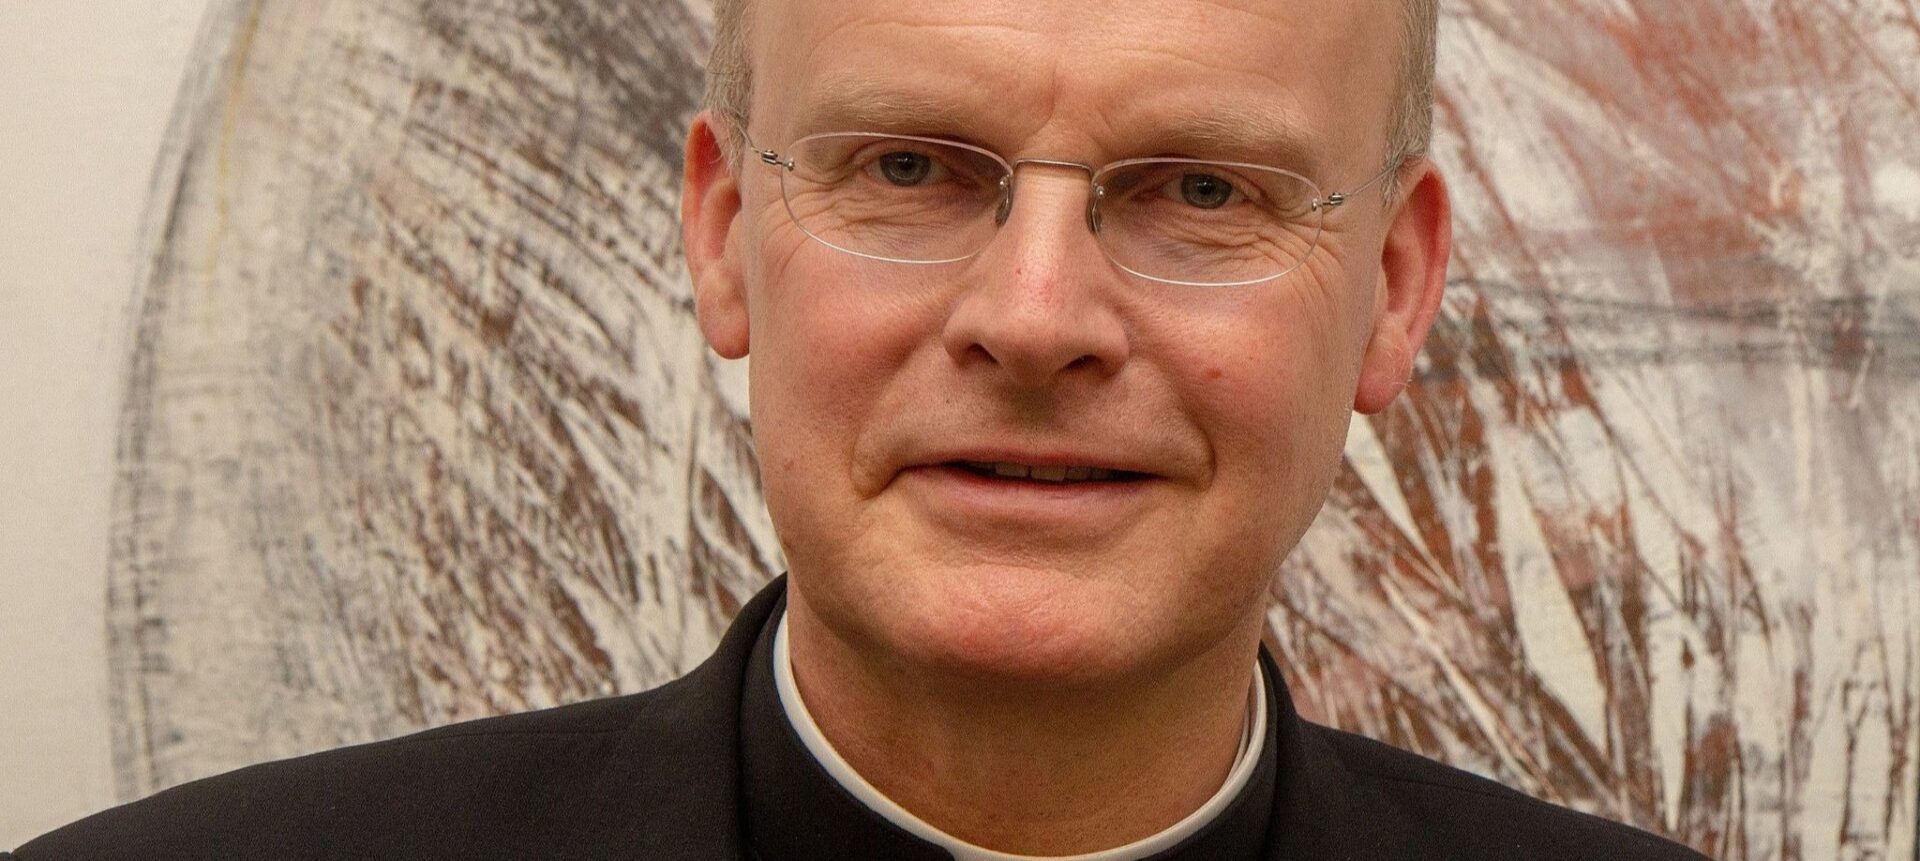 Mgr Franz-Josef Overbeck, évêque d'Essen, refuse de sanctionner des prêtres qui béniraient des homosexuels | © Olaf Kosinsky/Wikimedia/CC BY-SA 3.0